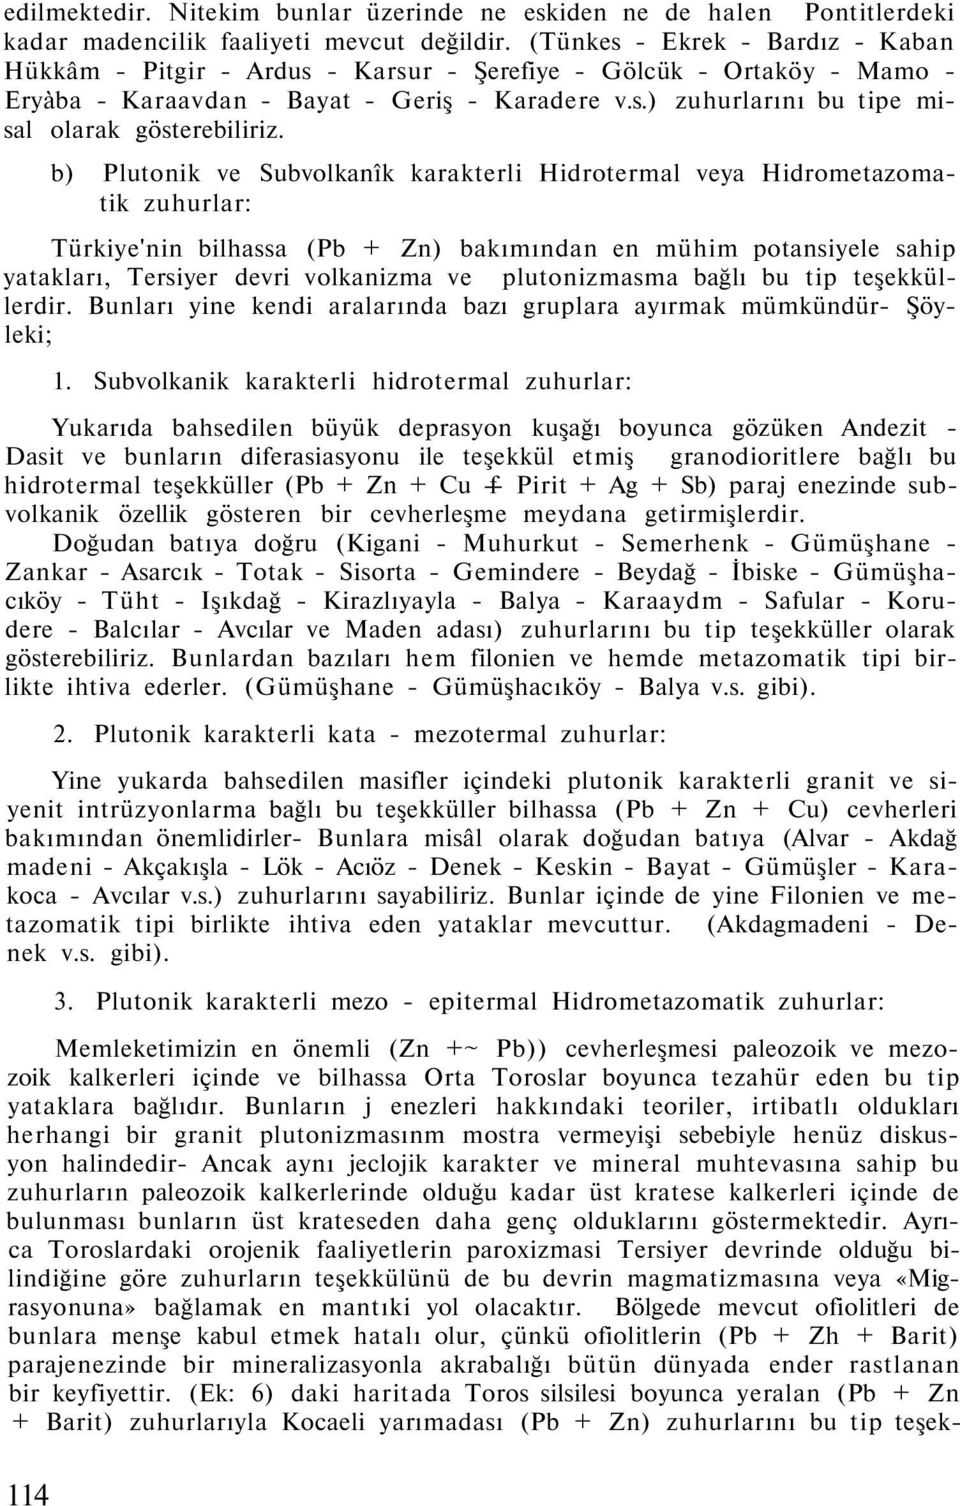 b) Plutonik ve Subvolkanîk karakterli Hidrotermal veya Hidrometazomatik zuhurlar: Türkiye'nin bilhassa (Pb + Zn) bakımından en mühim potansiyele sahip yatakları, Tersiyer devri volkanizma ve